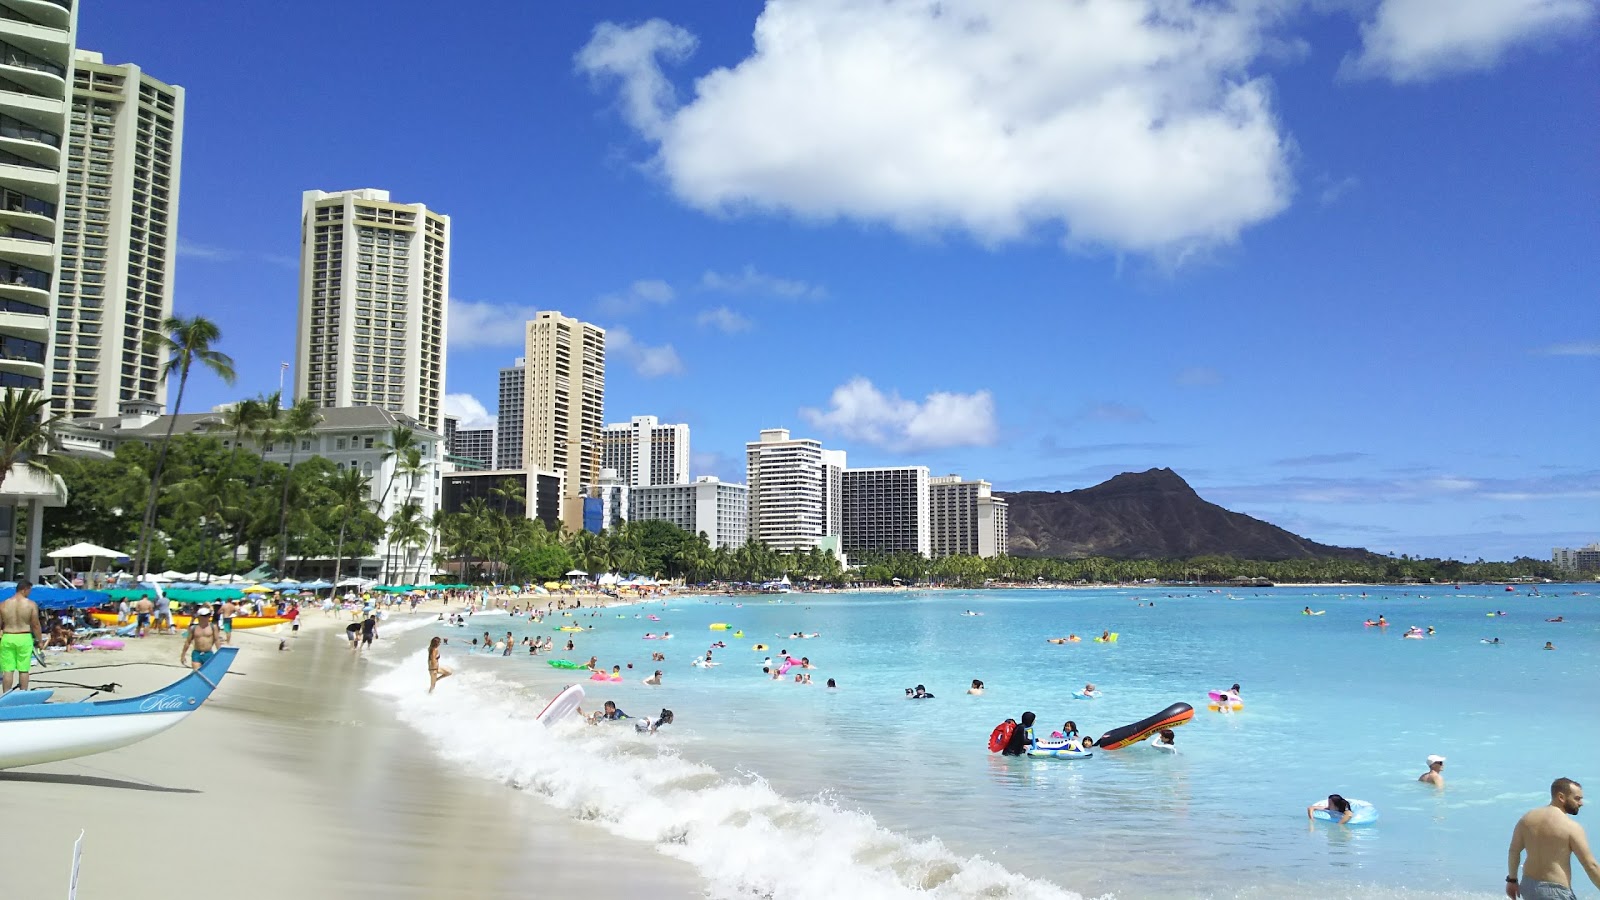 Waikiki Plajı'in fotoğrafı parlak ince kum yüzey ile